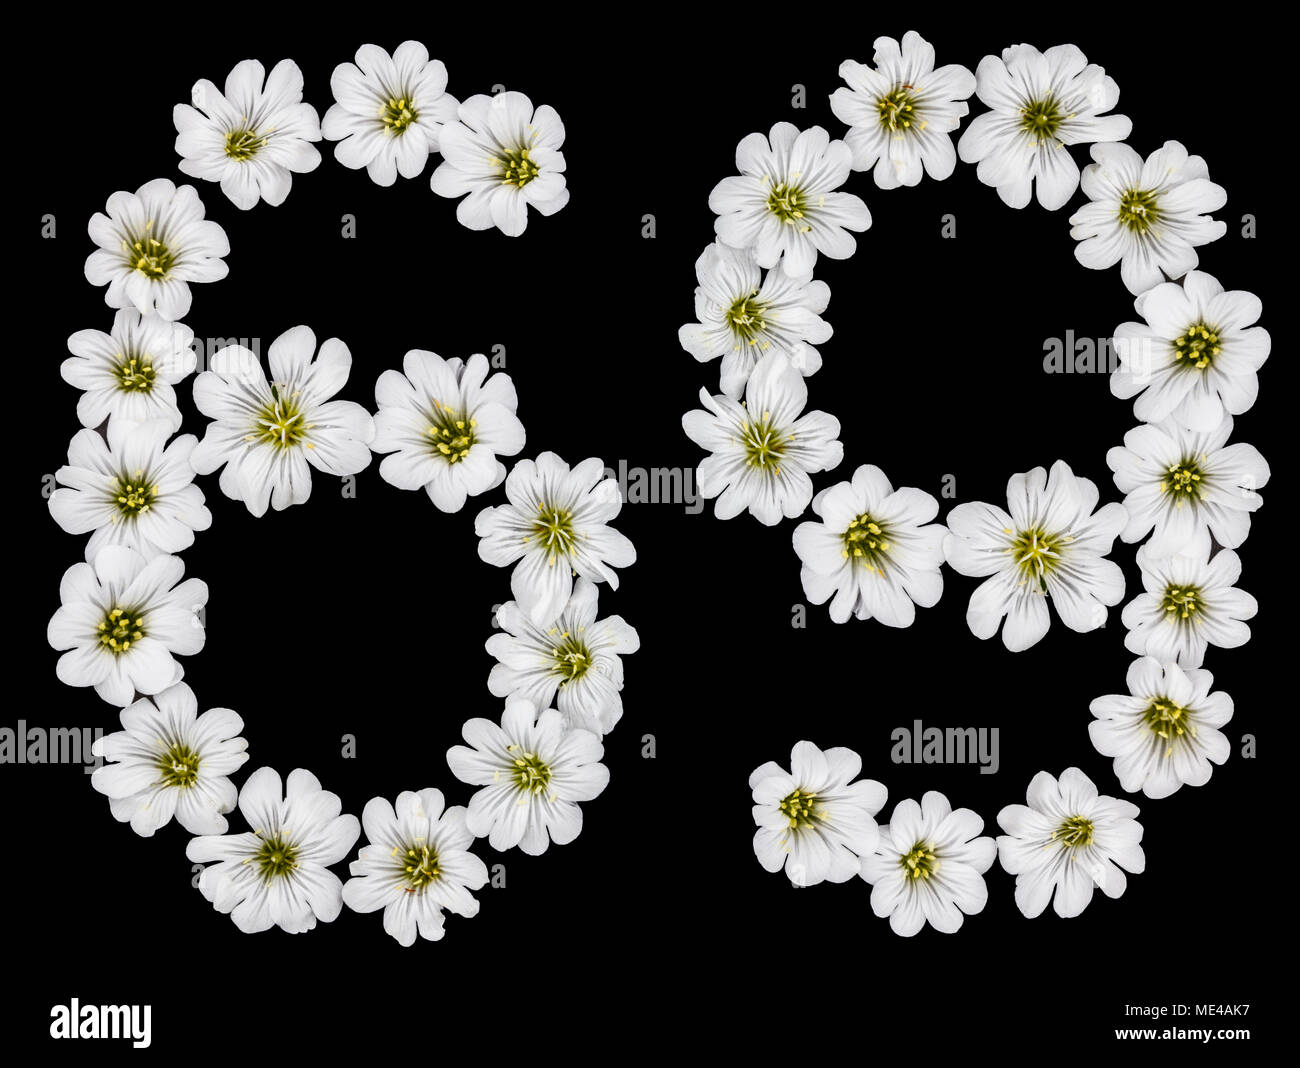 Numero arabo 69, sessanta nove, sessanta, sei, nove, da fiori bianchi di Cerastium tomentosum, isolato su sfondo nero Foto Stock